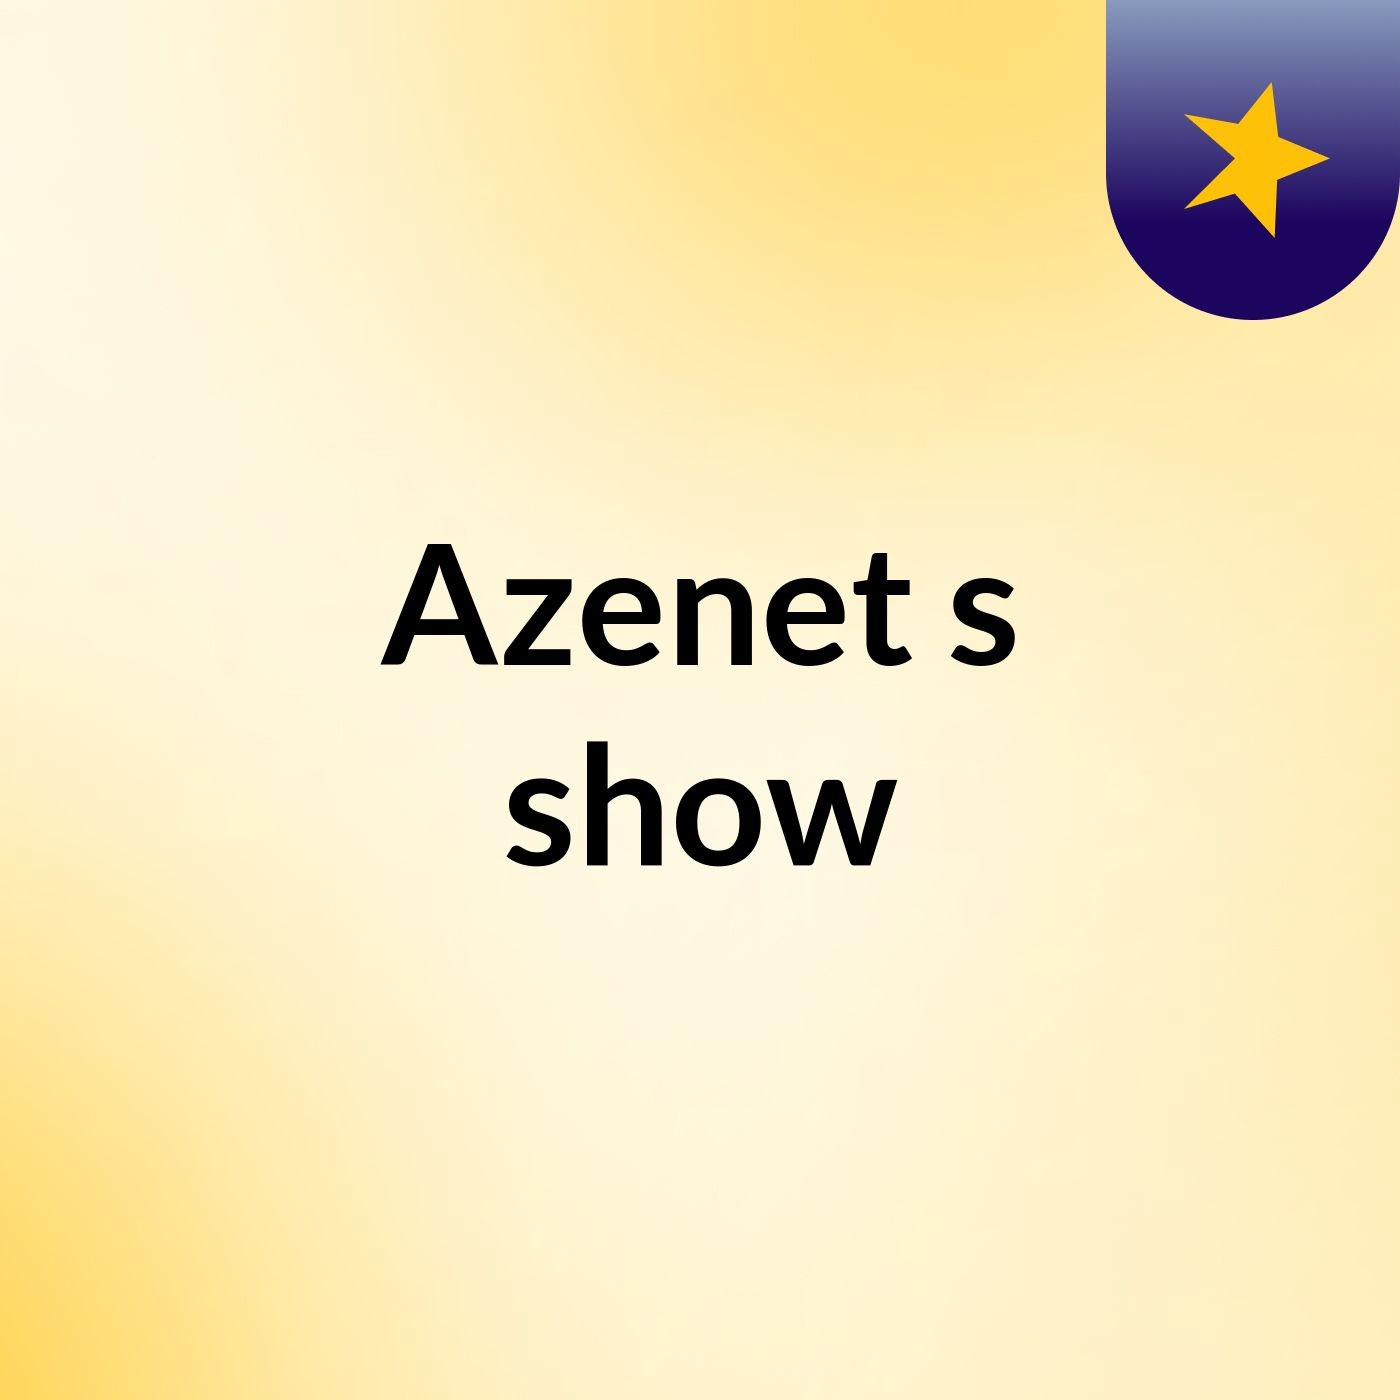 Azenet's show